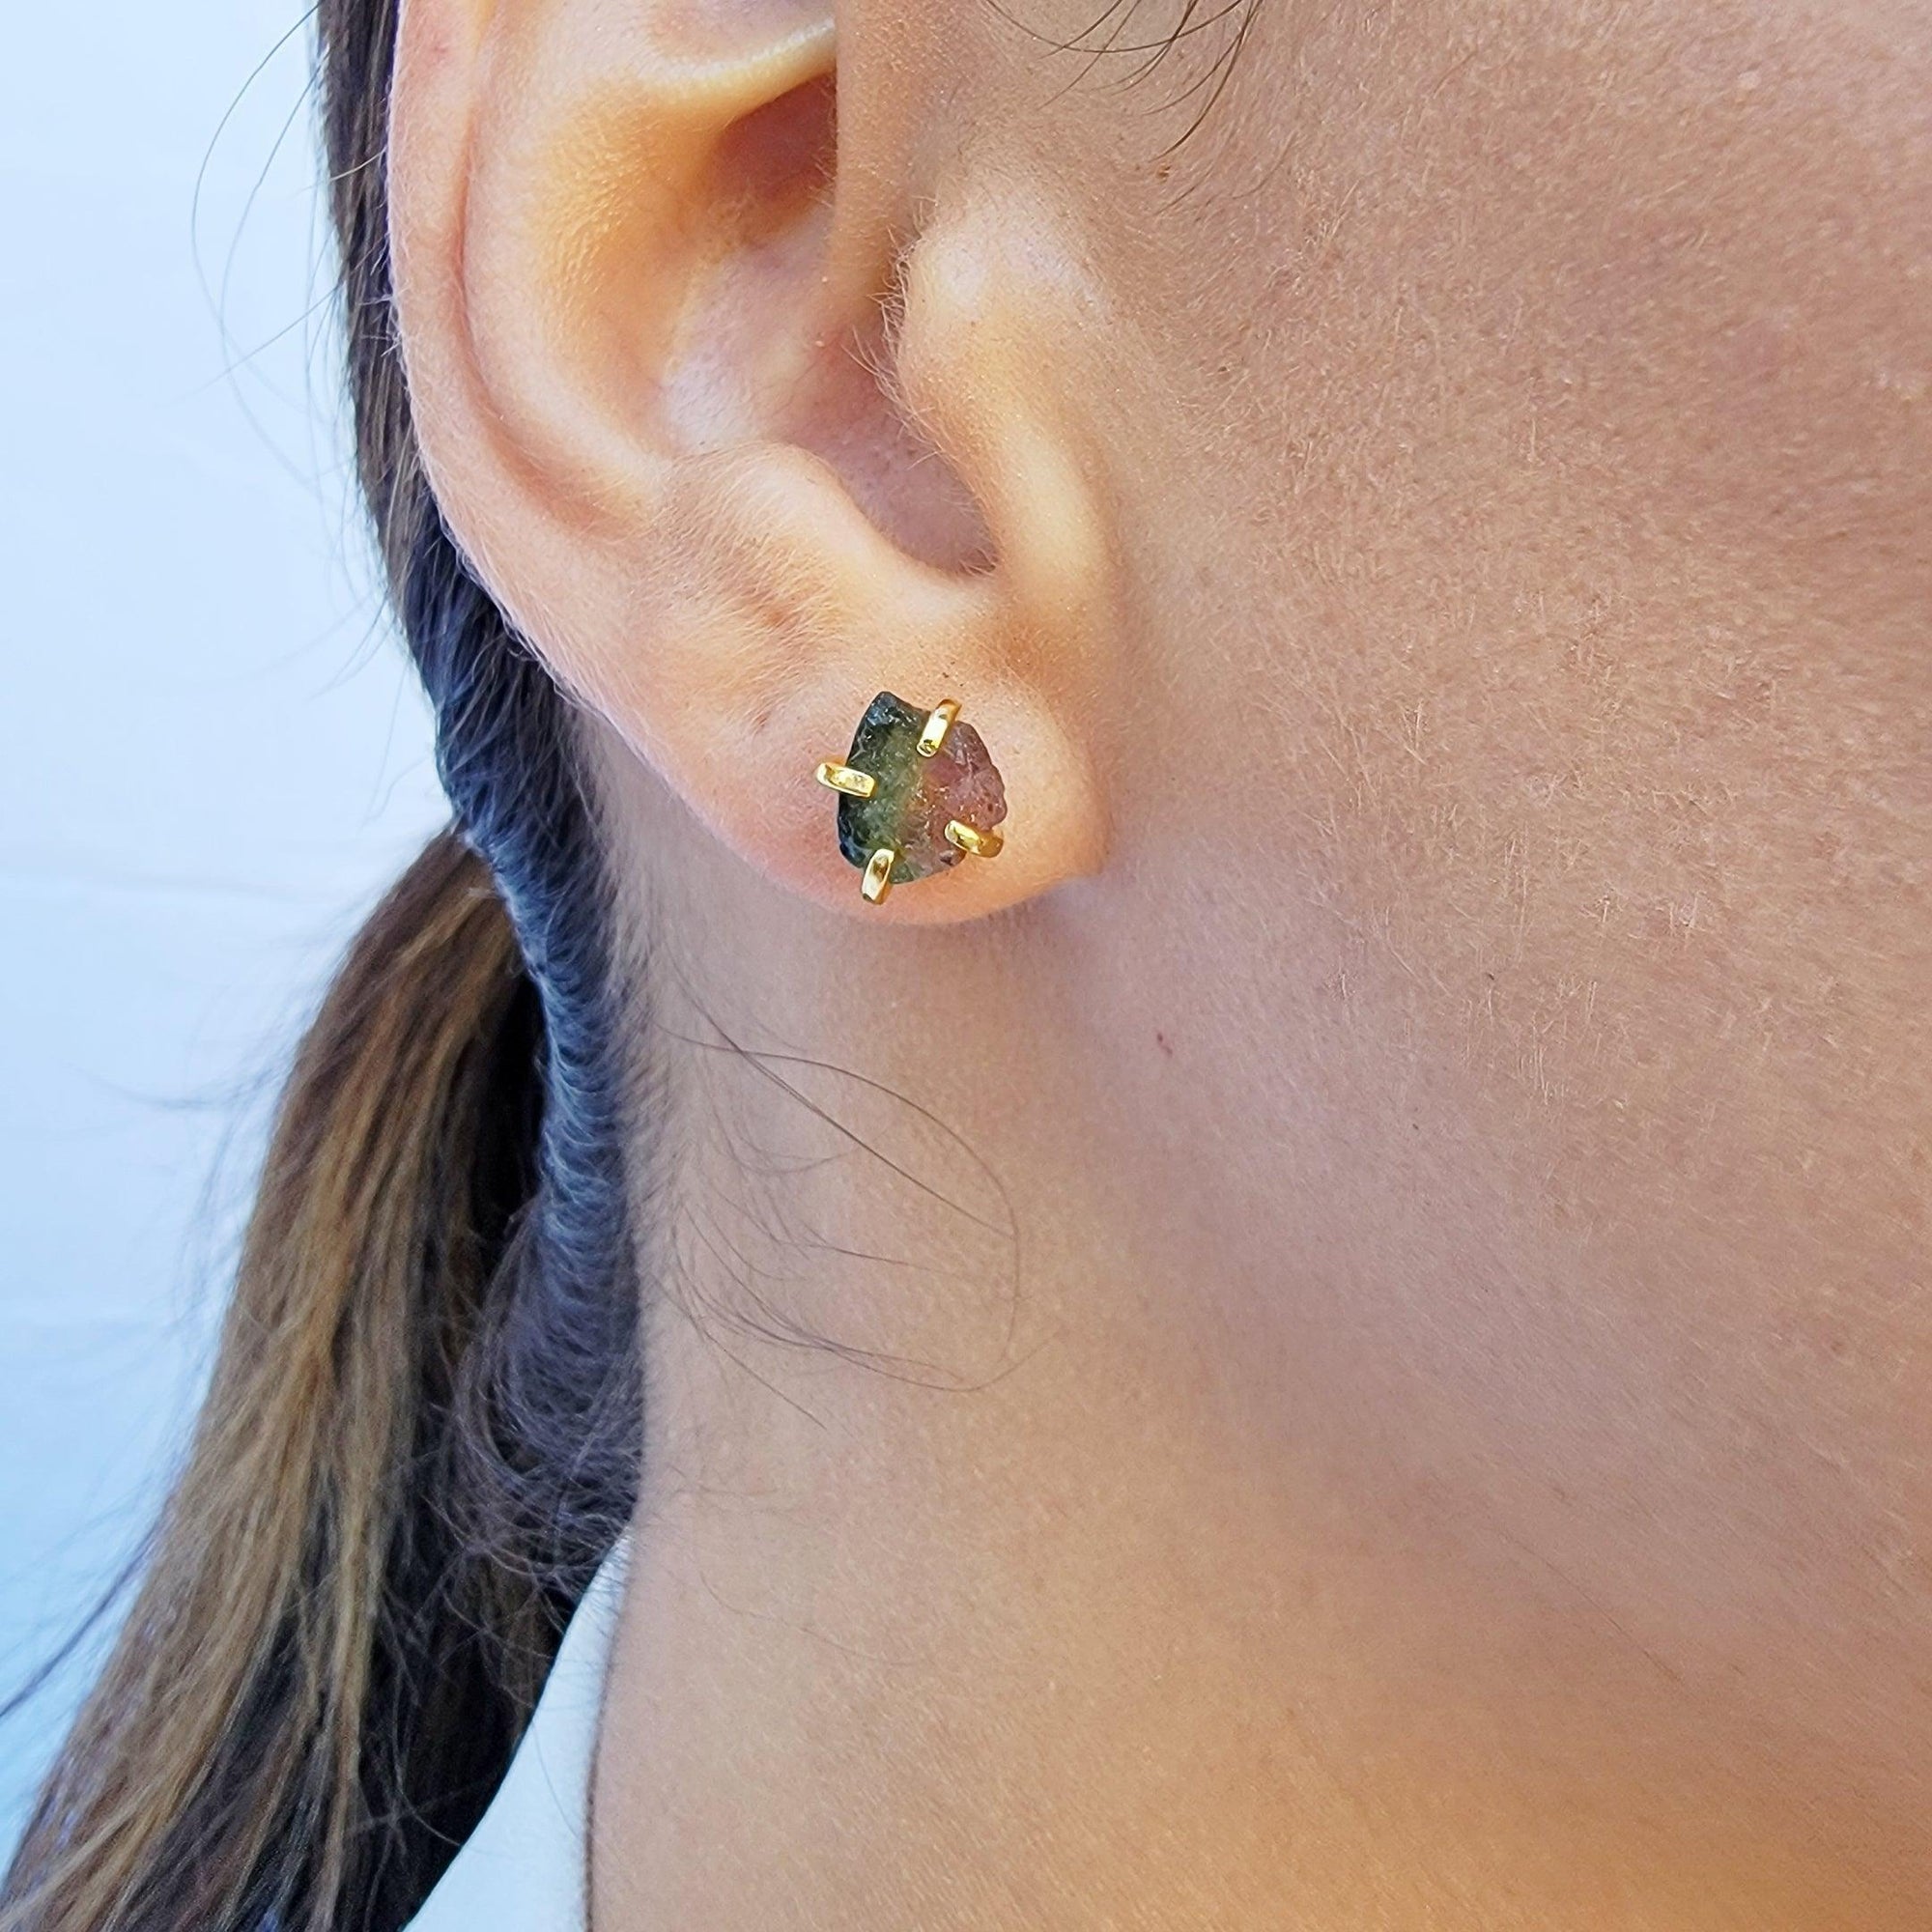 Watermelon Tourmaline Stud Earrings - Uniquelan Jewelry